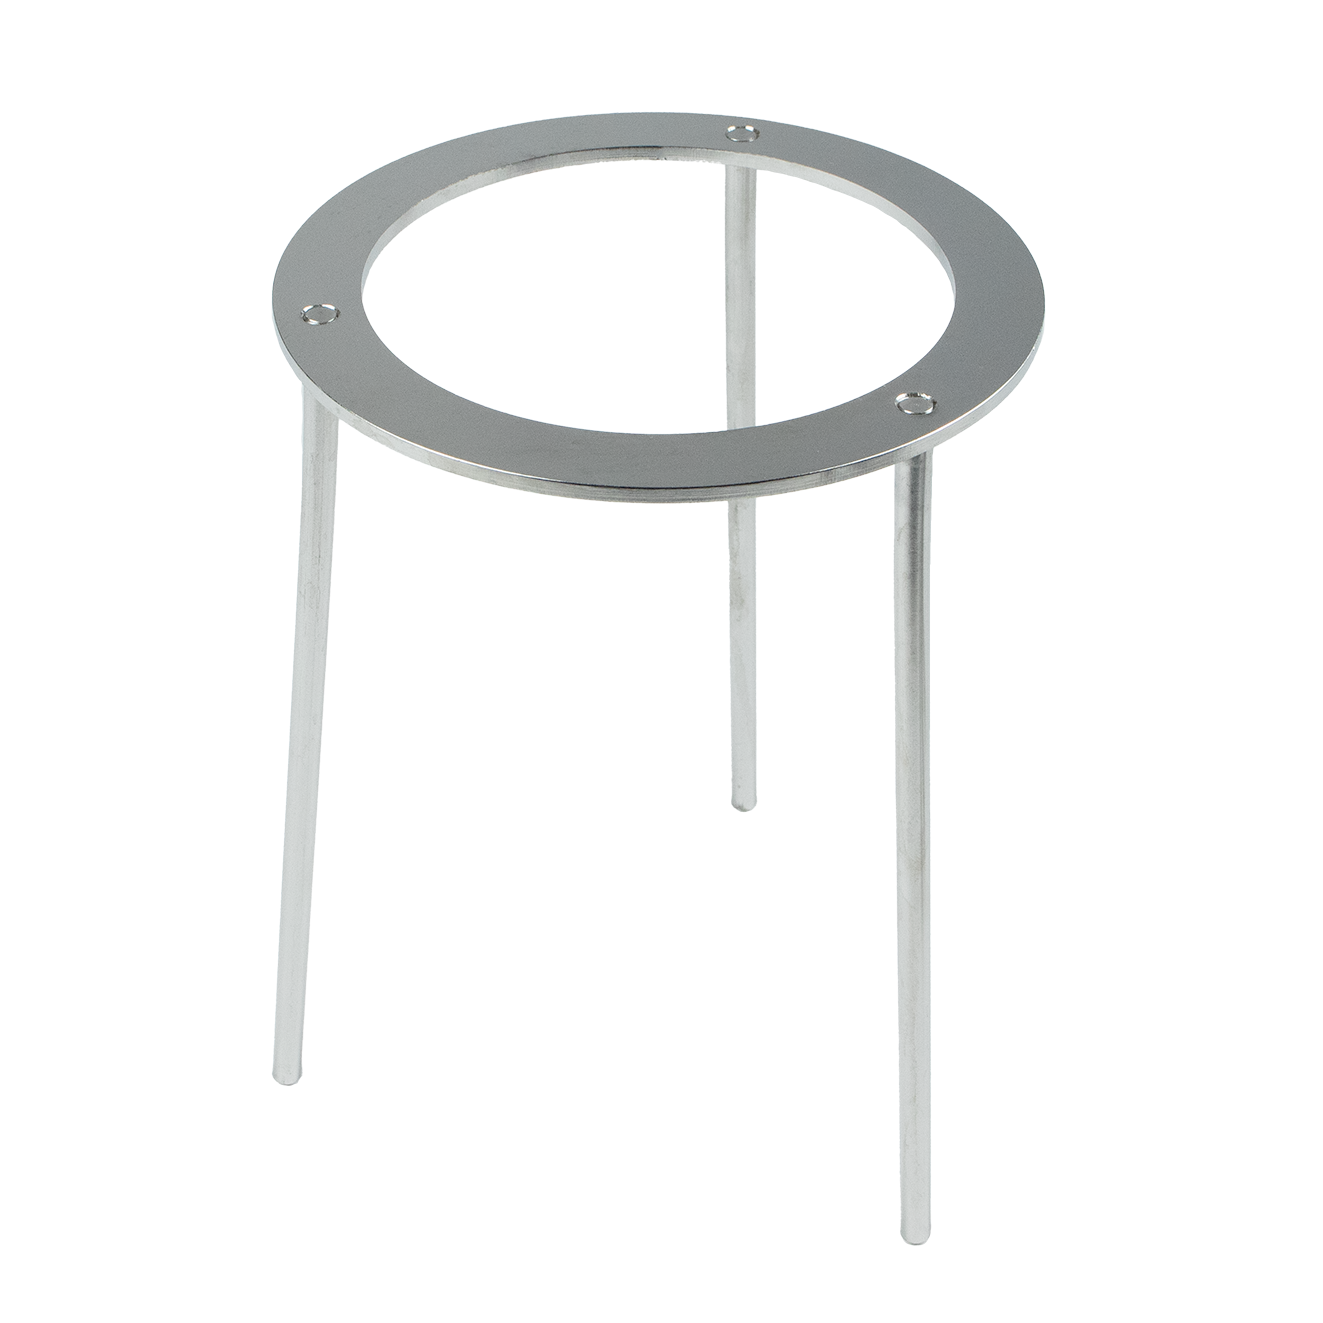 Tripod - height 180 mm, inner diameter 100 mm - stainless steel